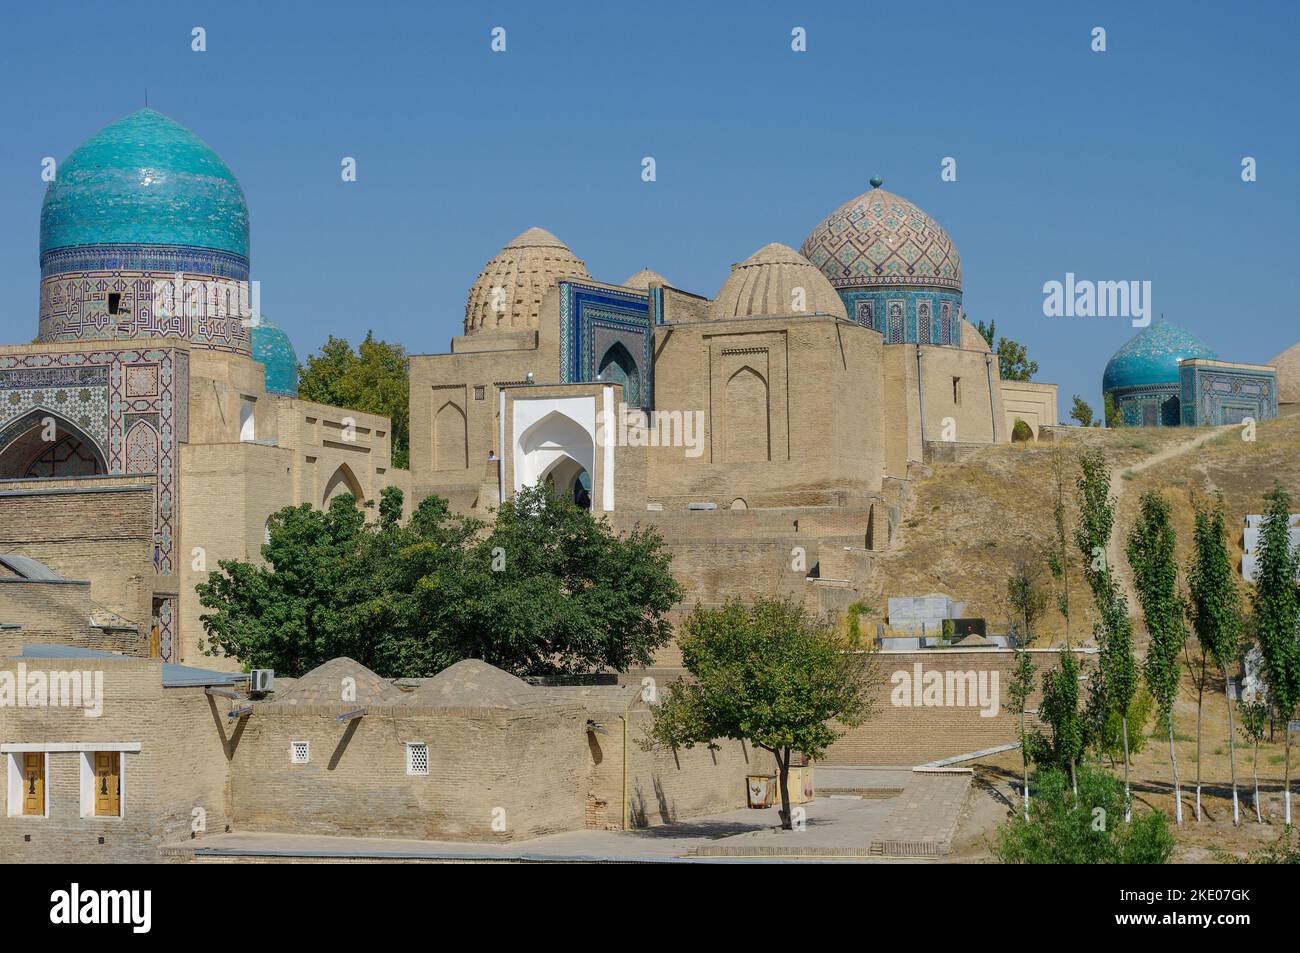 Vue panoramique de la nécropole médiévale Shah-i-Zinda depuis l'extérieur de Samarkand, classée au patrimoine mondial de l'UNESCO Banque D'Images